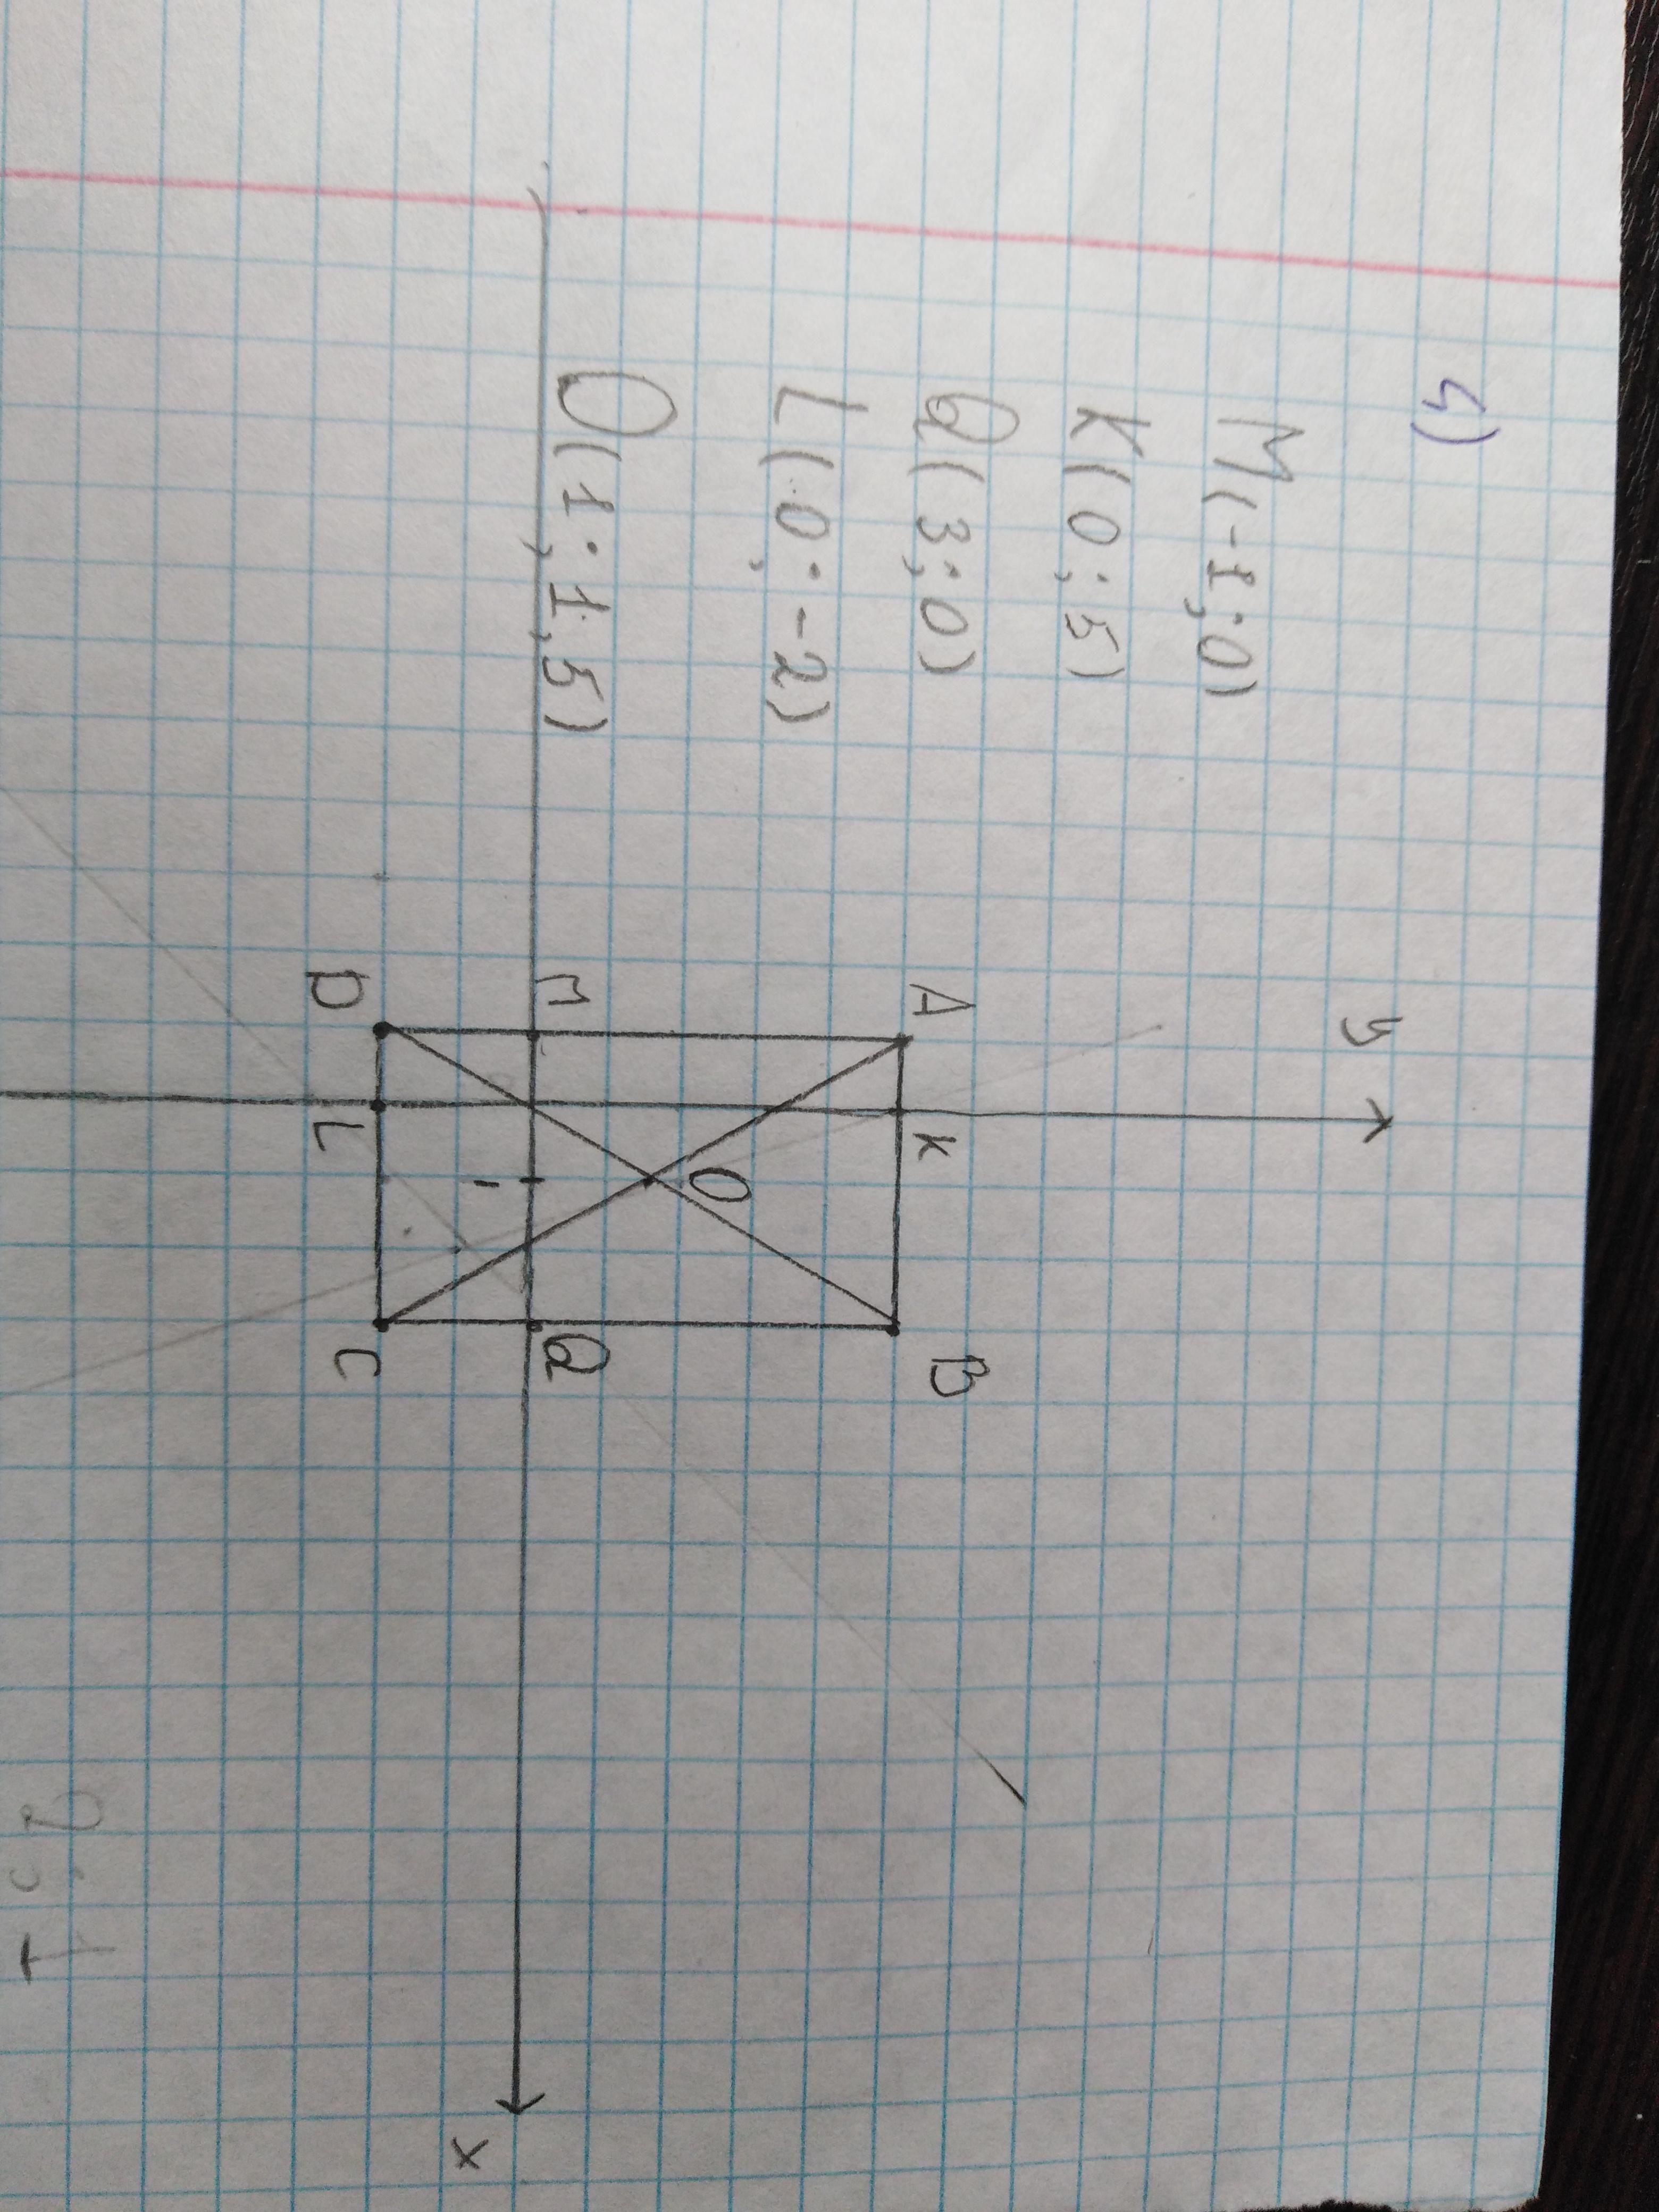 Найдите координаты вершин прямоугольника. A B C D вершины прямоугольника. Определить координаты вершин прямоугольника. A B C D вершины прямоугольника постройте точки а -5 0. Определить координаты вершин прямоугольника с 6 4.